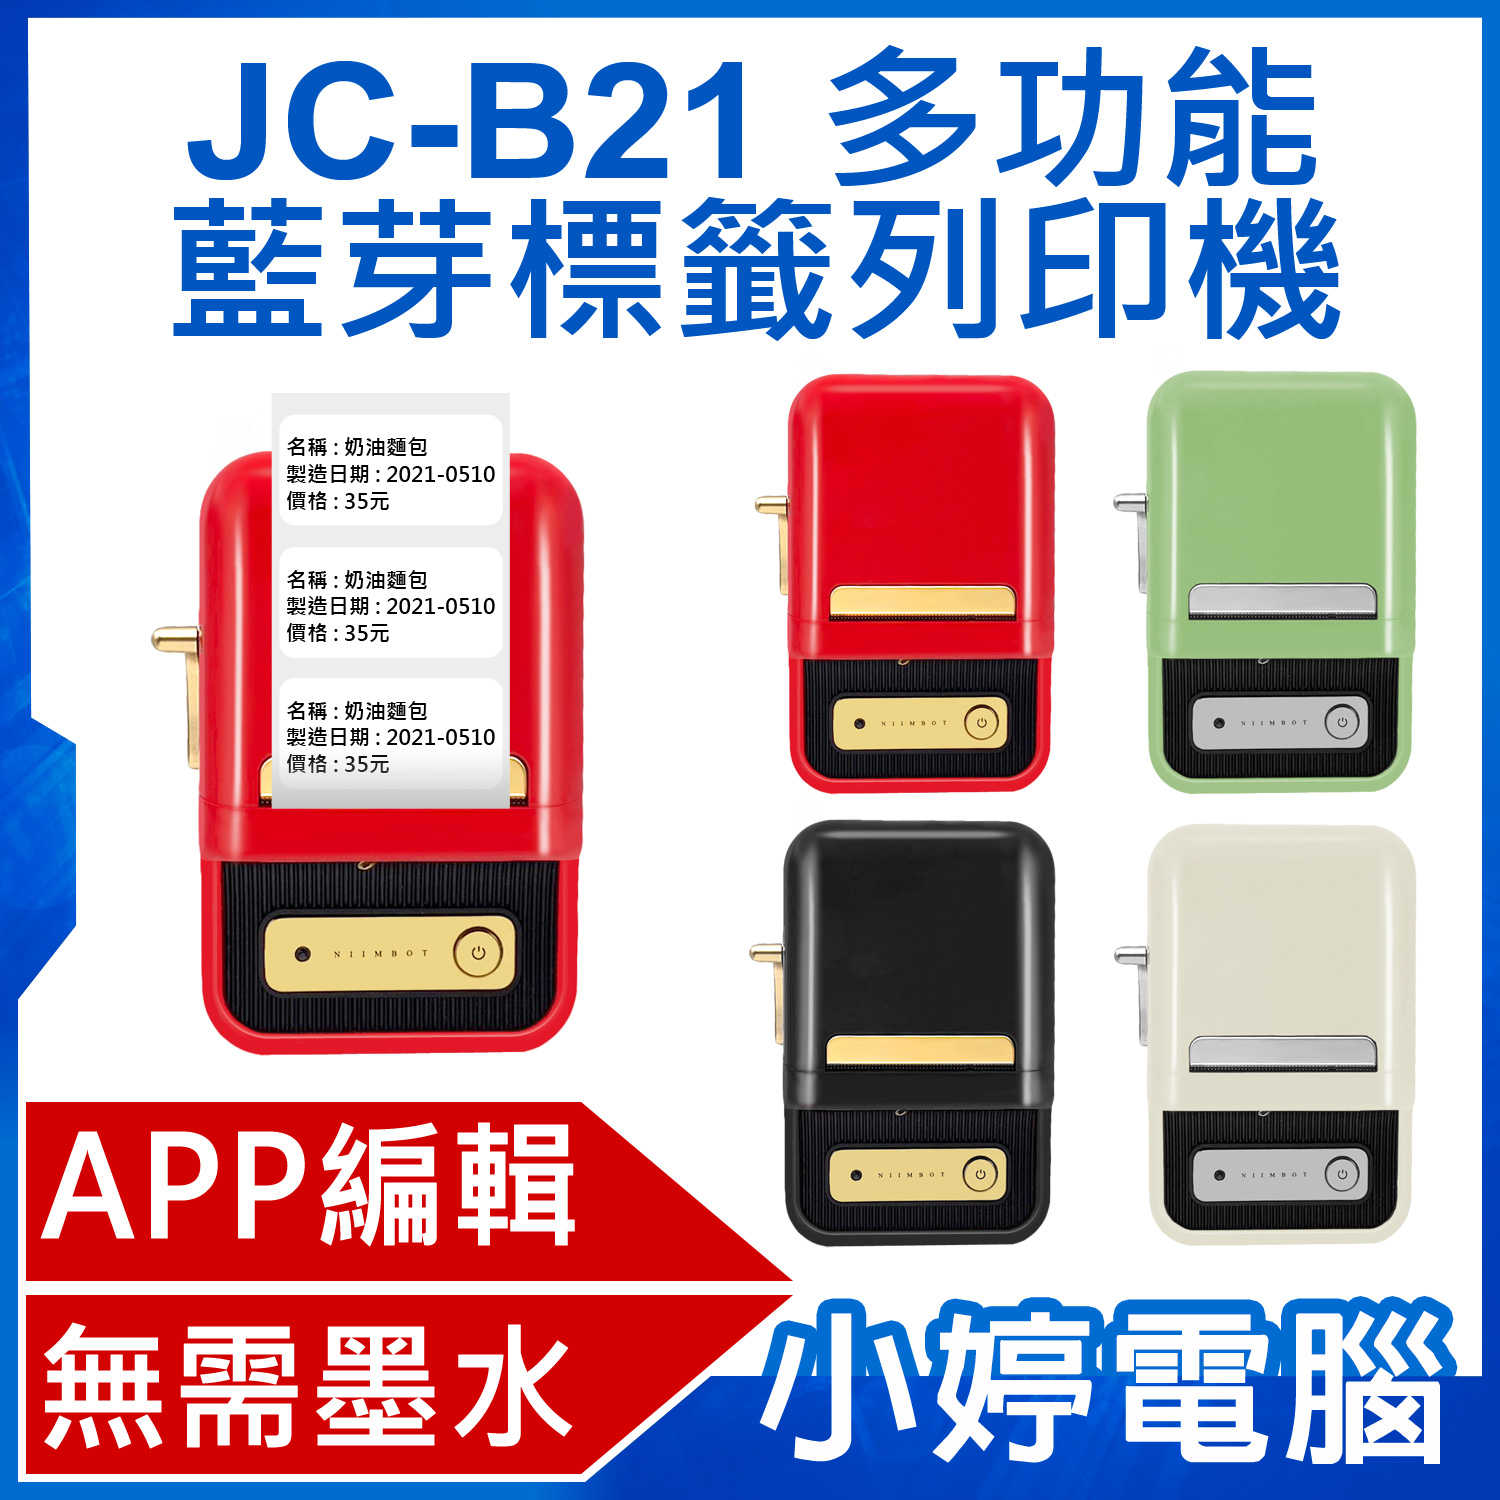 【小婷電腦】JC-B21 多功能藍芽標籤列印機 APP編輯 無需墨水 批量列印 多種版型